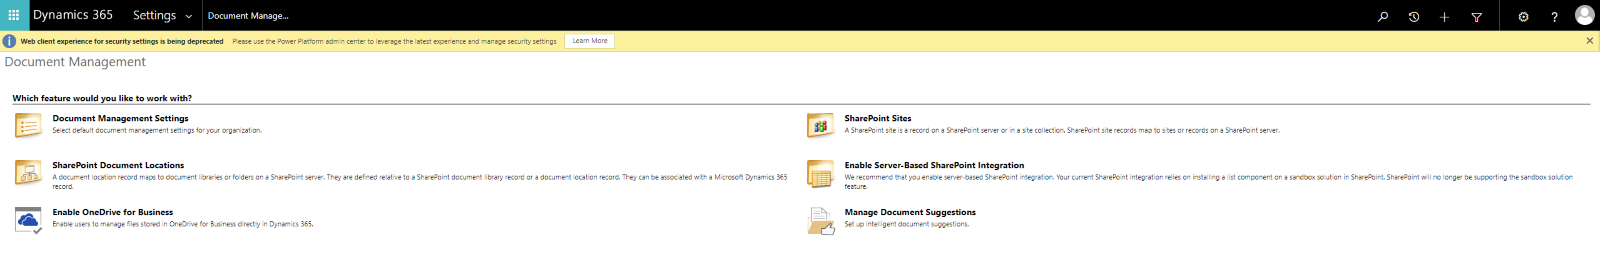 Document Management Feature Screenshot